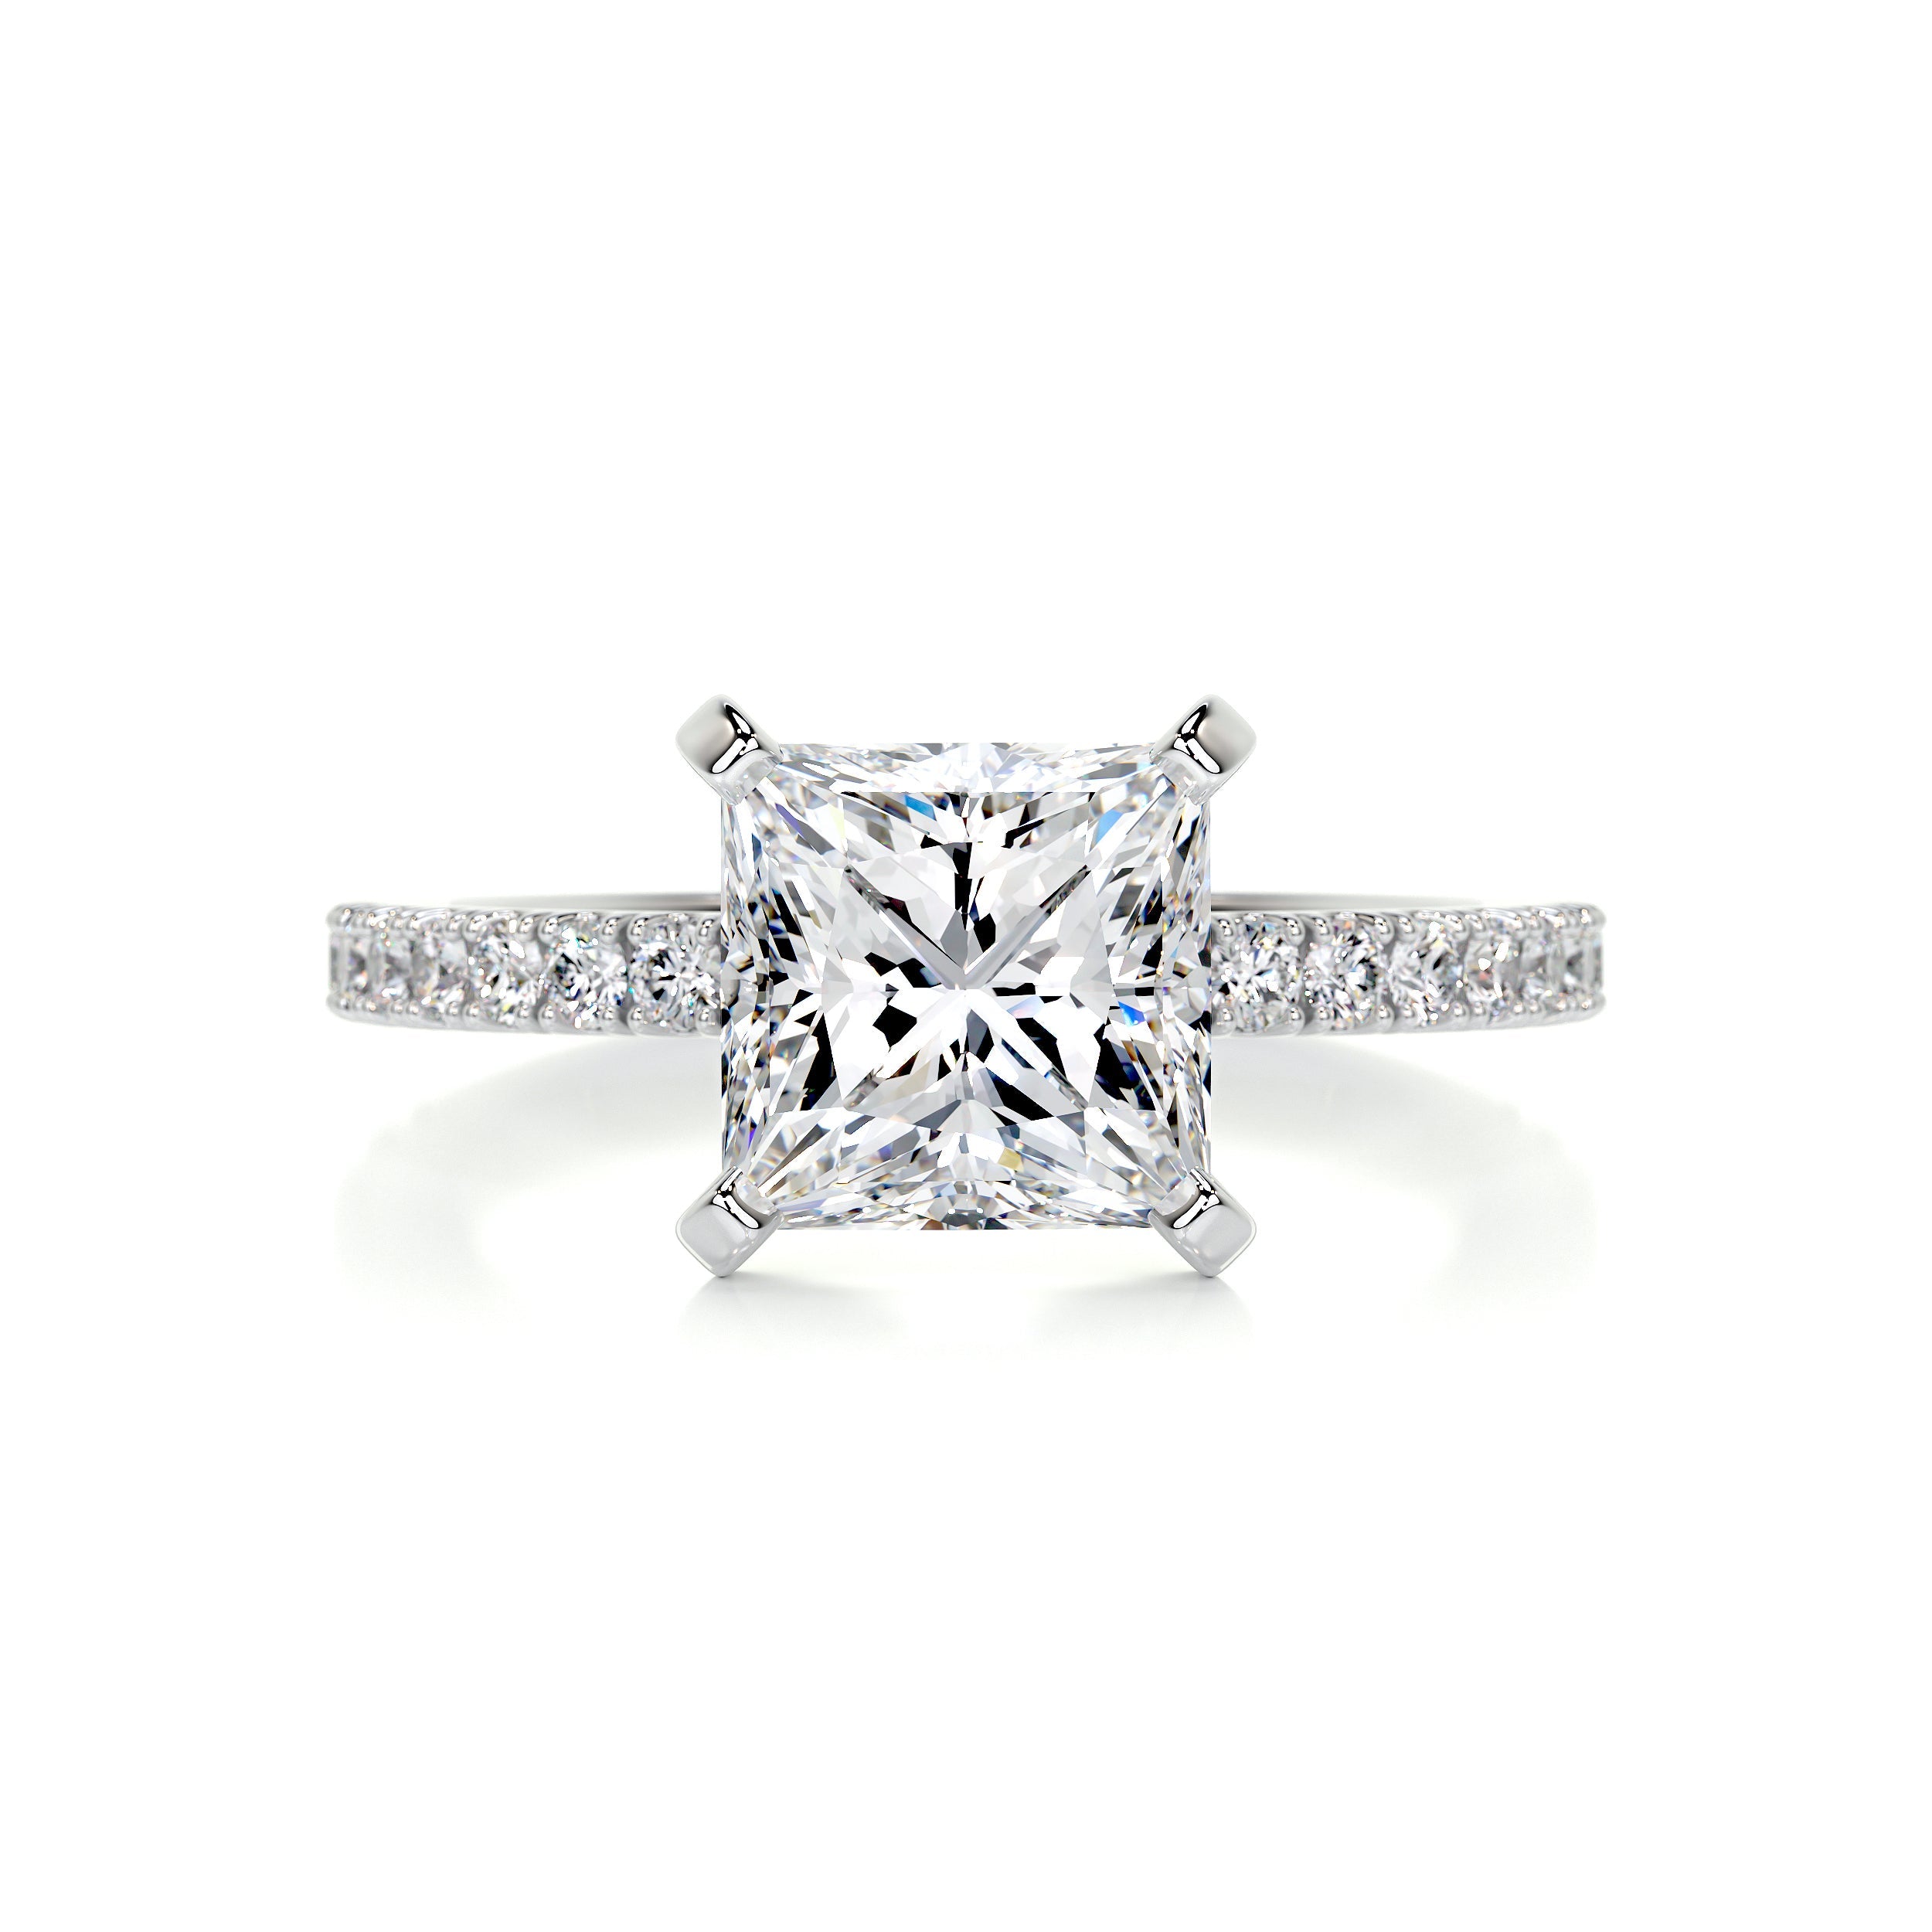 Stephanie Moissanite & Diamonds Ring   (2.8 Carat) -14K White Gold